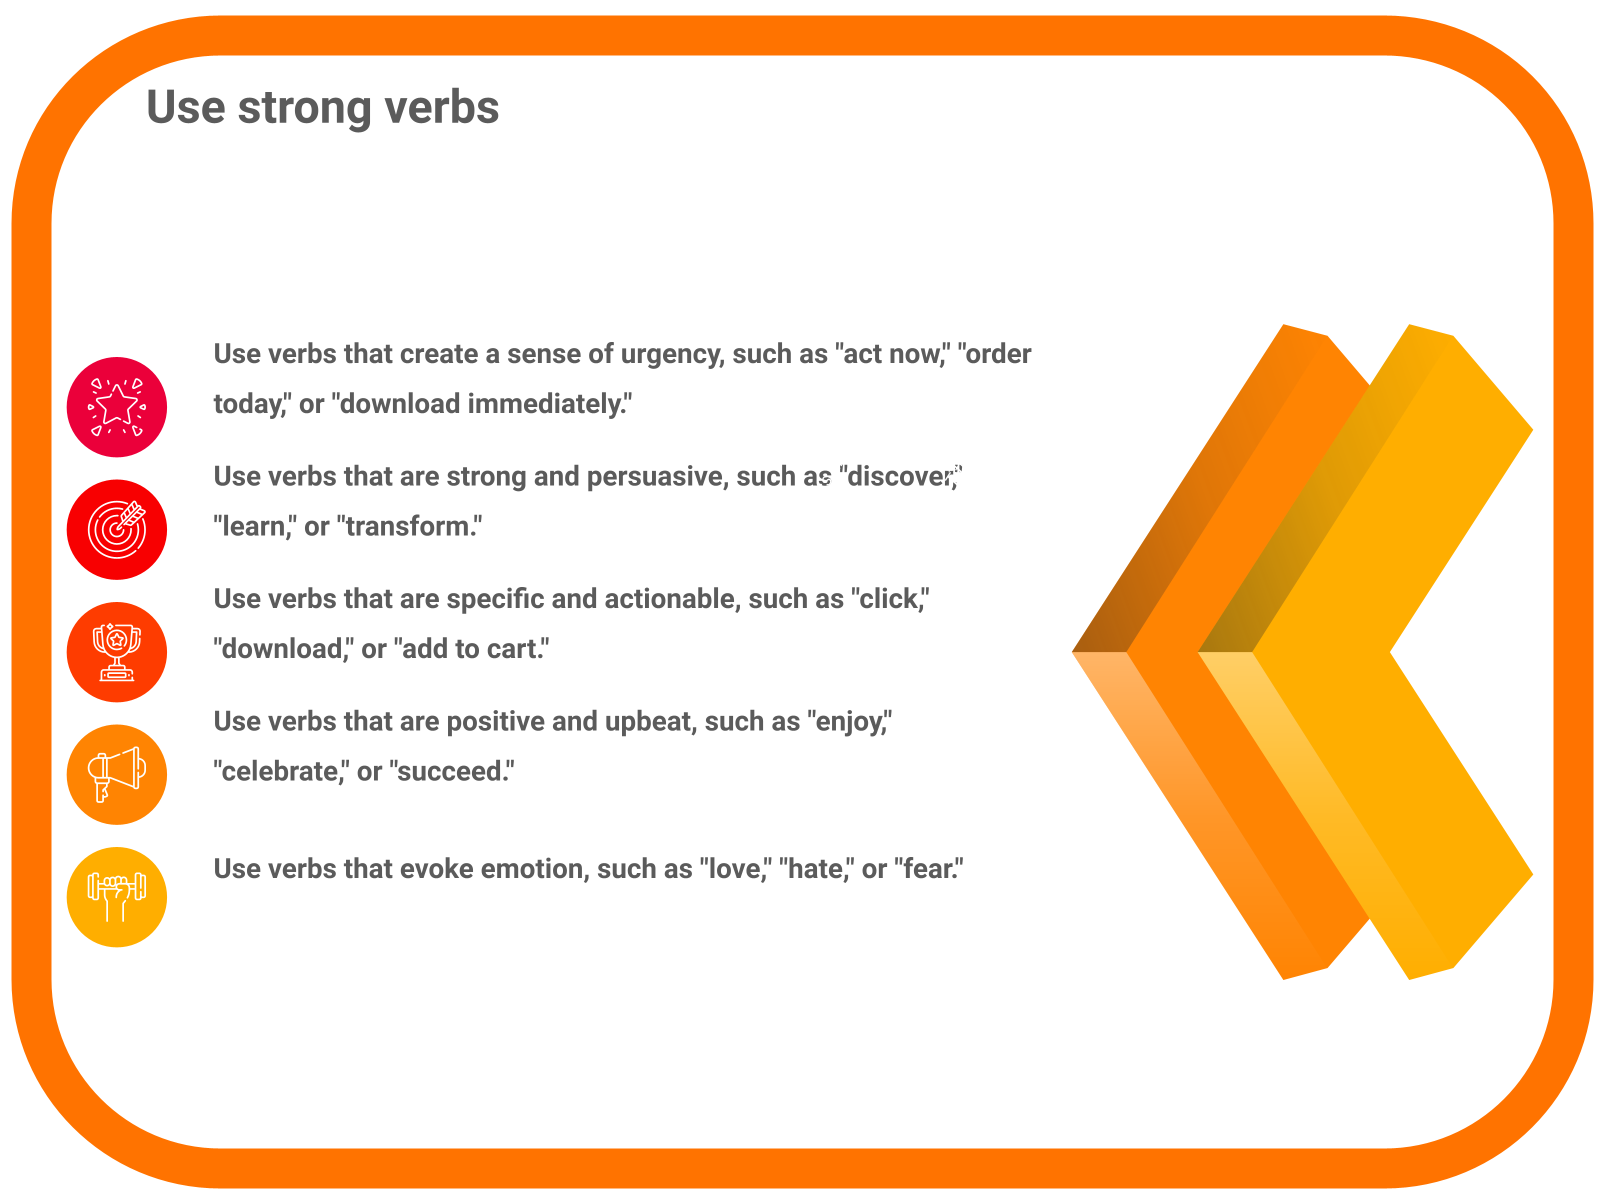 Use strong verbs